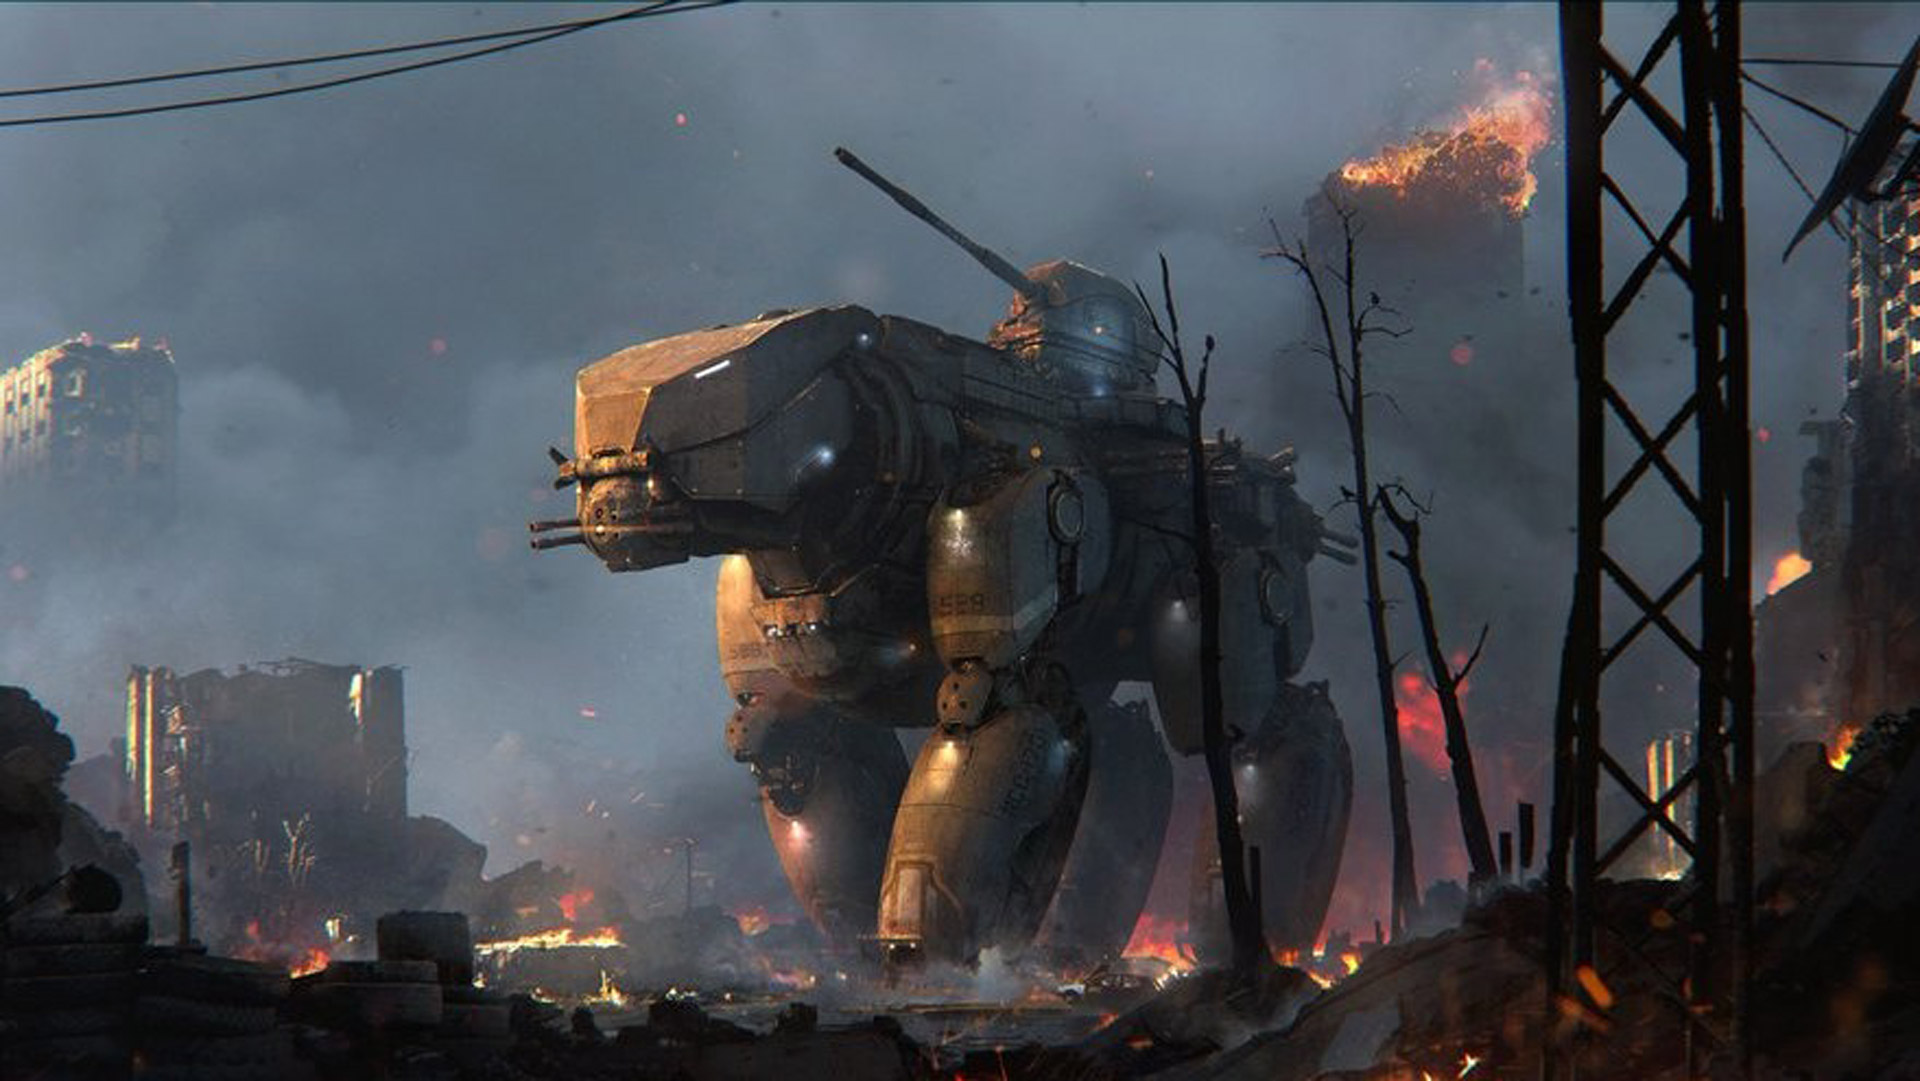 Gears of War 2 Concept Art